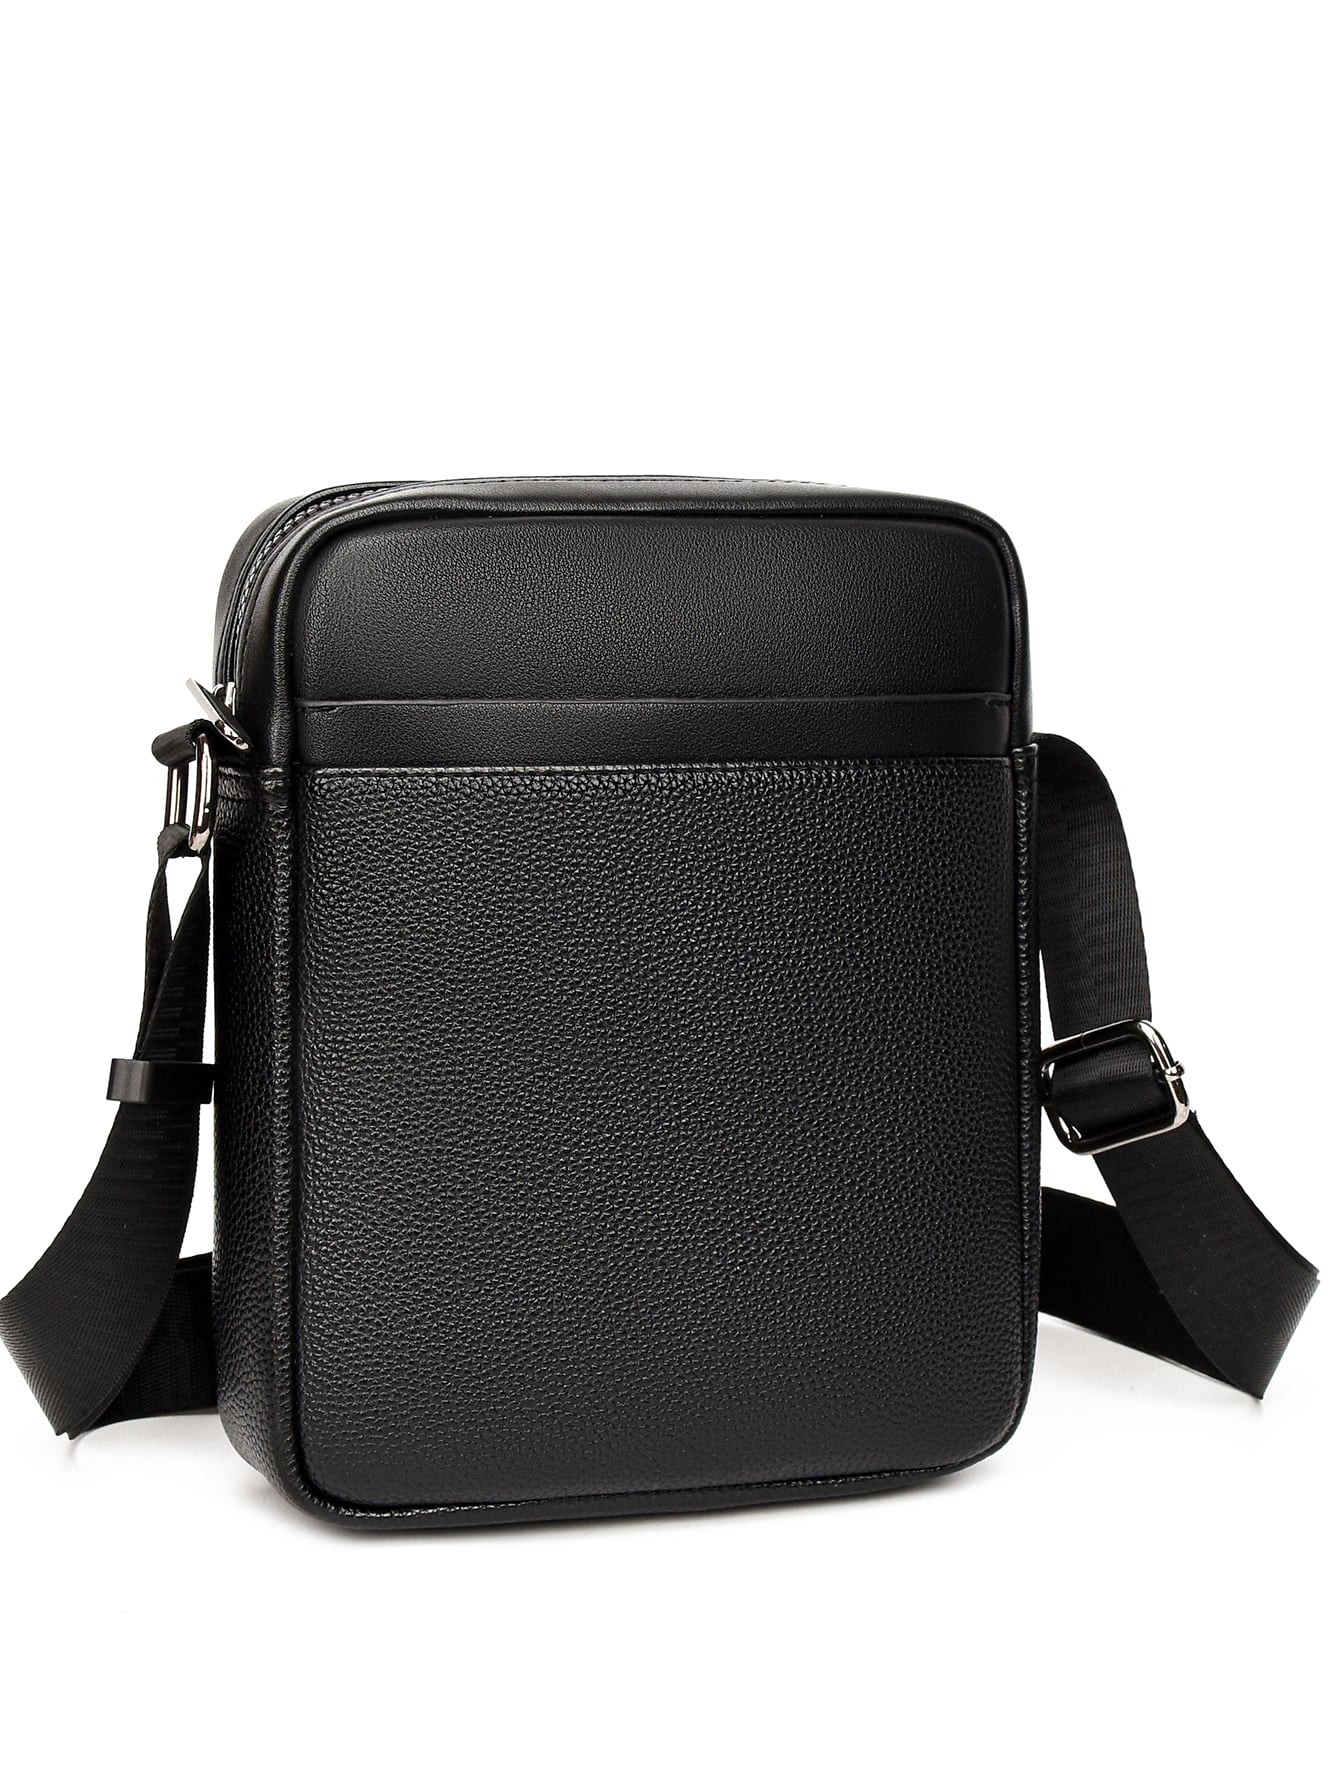 Мужская сумка через плечо с узором личи, большая вместимость Sh03-2, черный